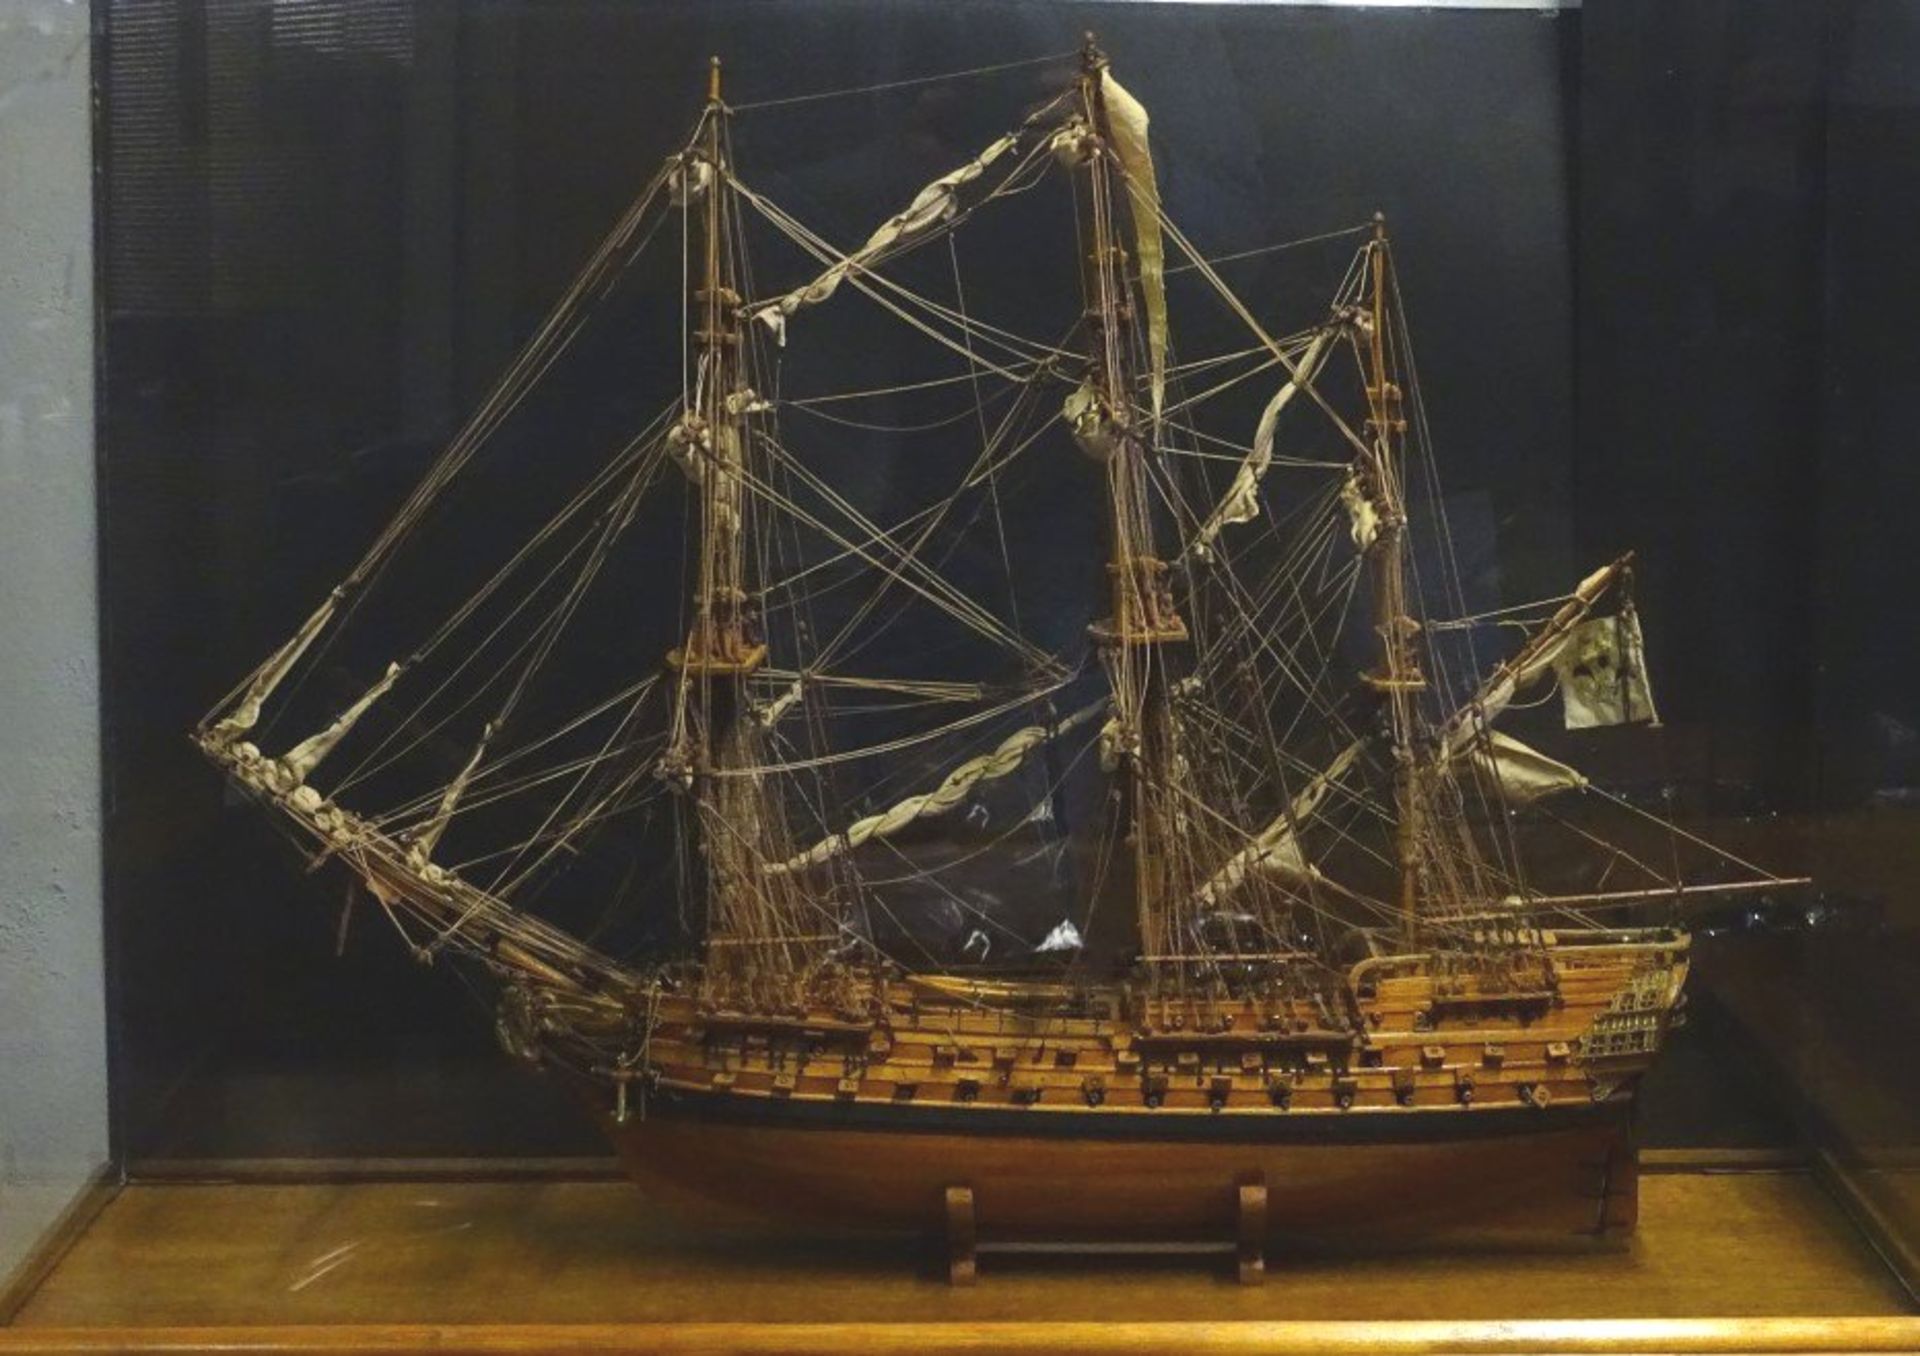 grosses Segelschiffmodell "Le superbe" in Glaskasten, feine Handarbeit, Kasten H-70,5 cm, 95x35,5 - Bild 2 aus 10